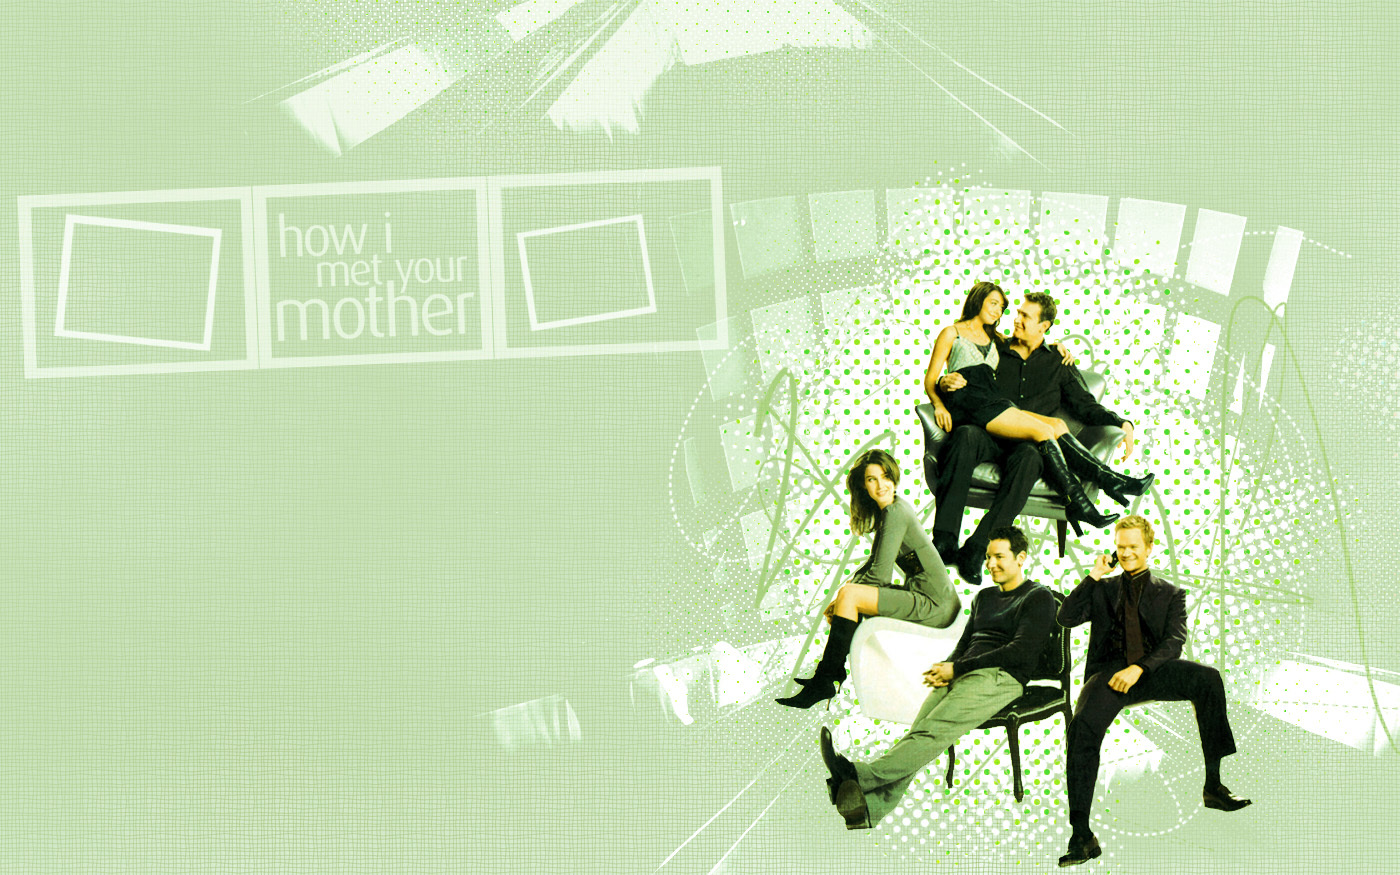 HIMYM Wallpaper - How I Met Your Mother Wallpaper 978741 - Fanpop